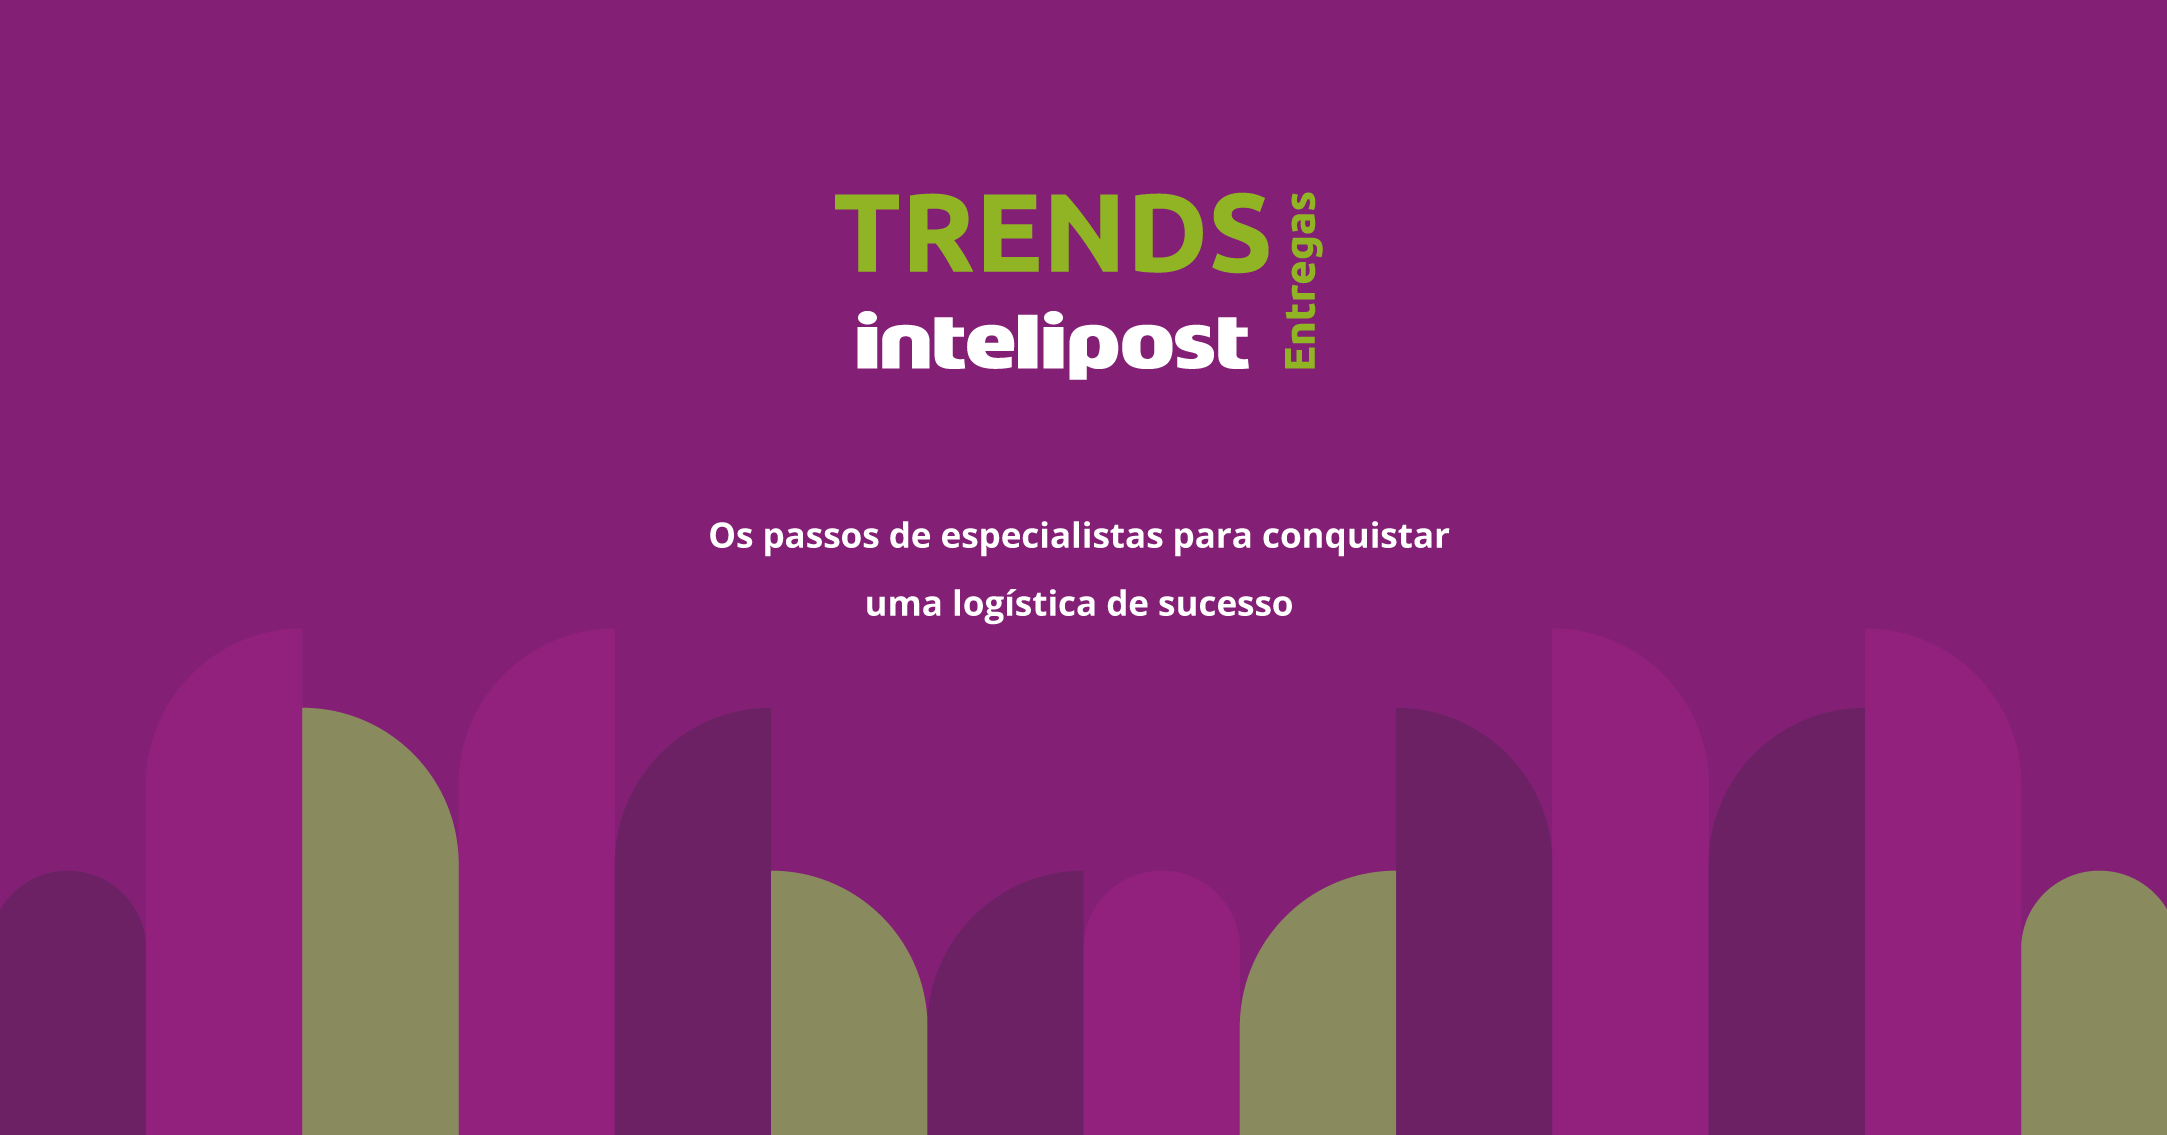 Trends Intelipost